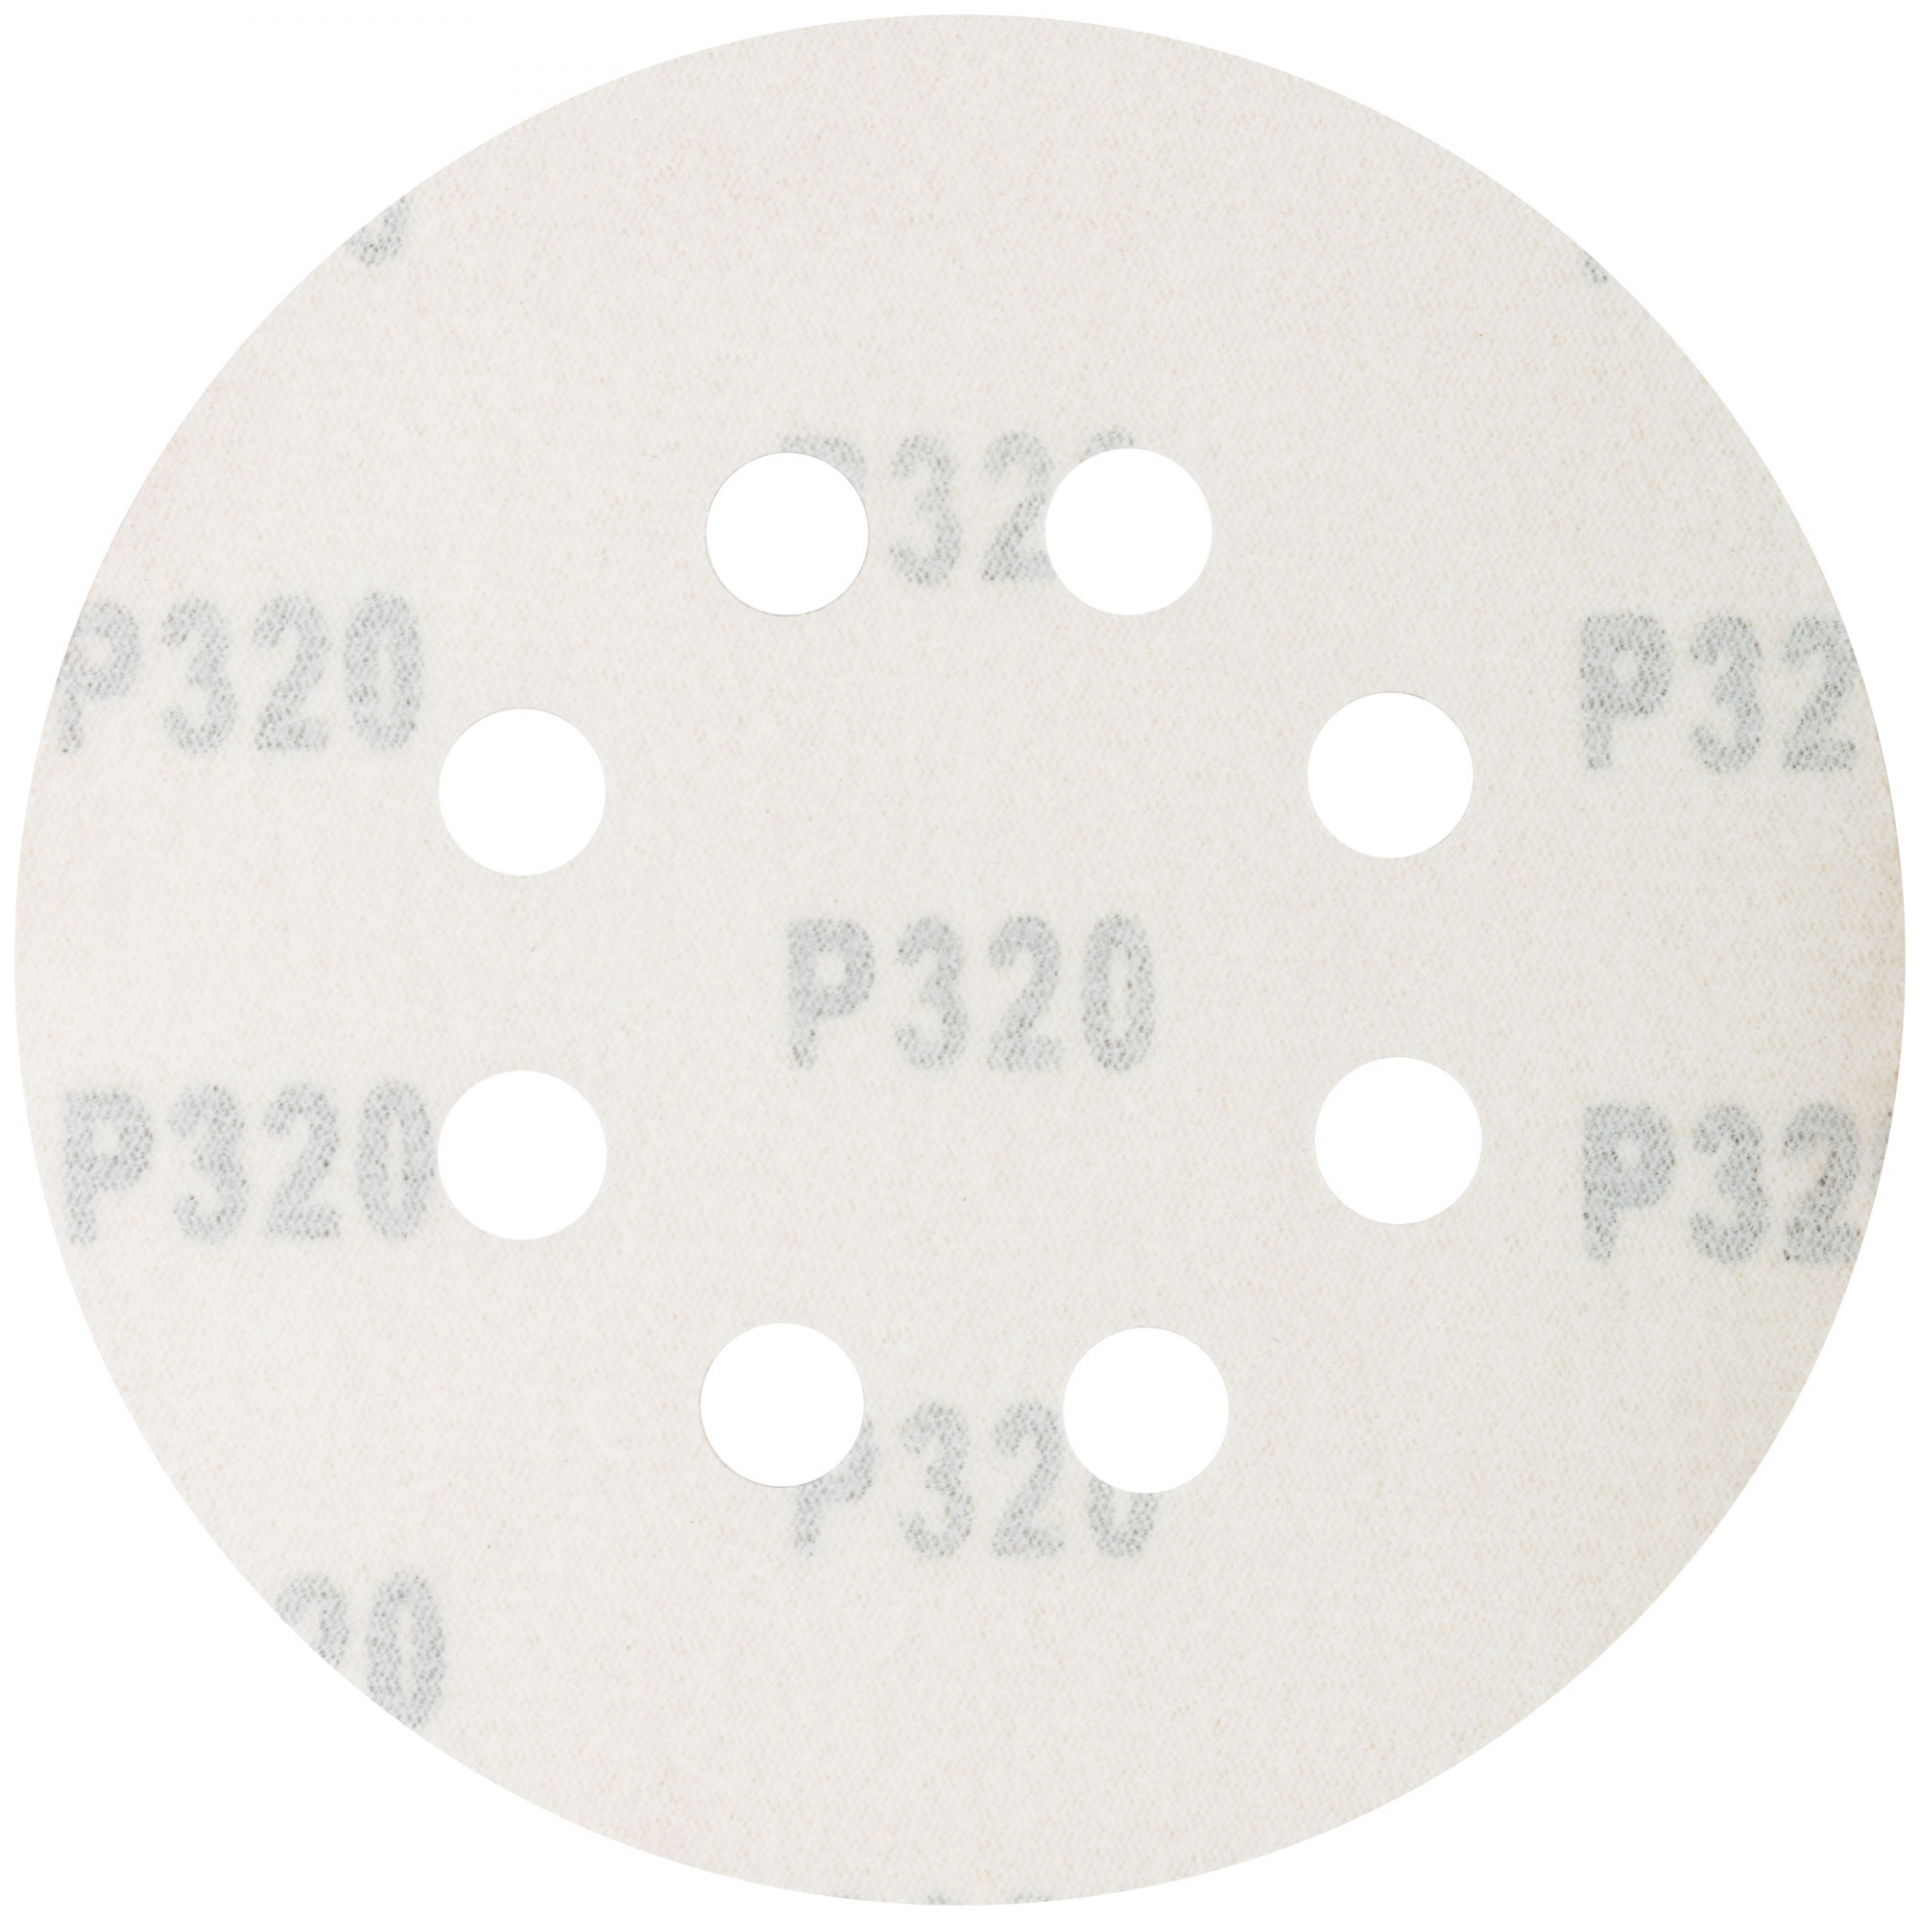 Круги абразивные шлифовальные перфорированные на ворсовой основе под "липучку" (Р320, 125 мм, 5шт.), CUTOP Profi